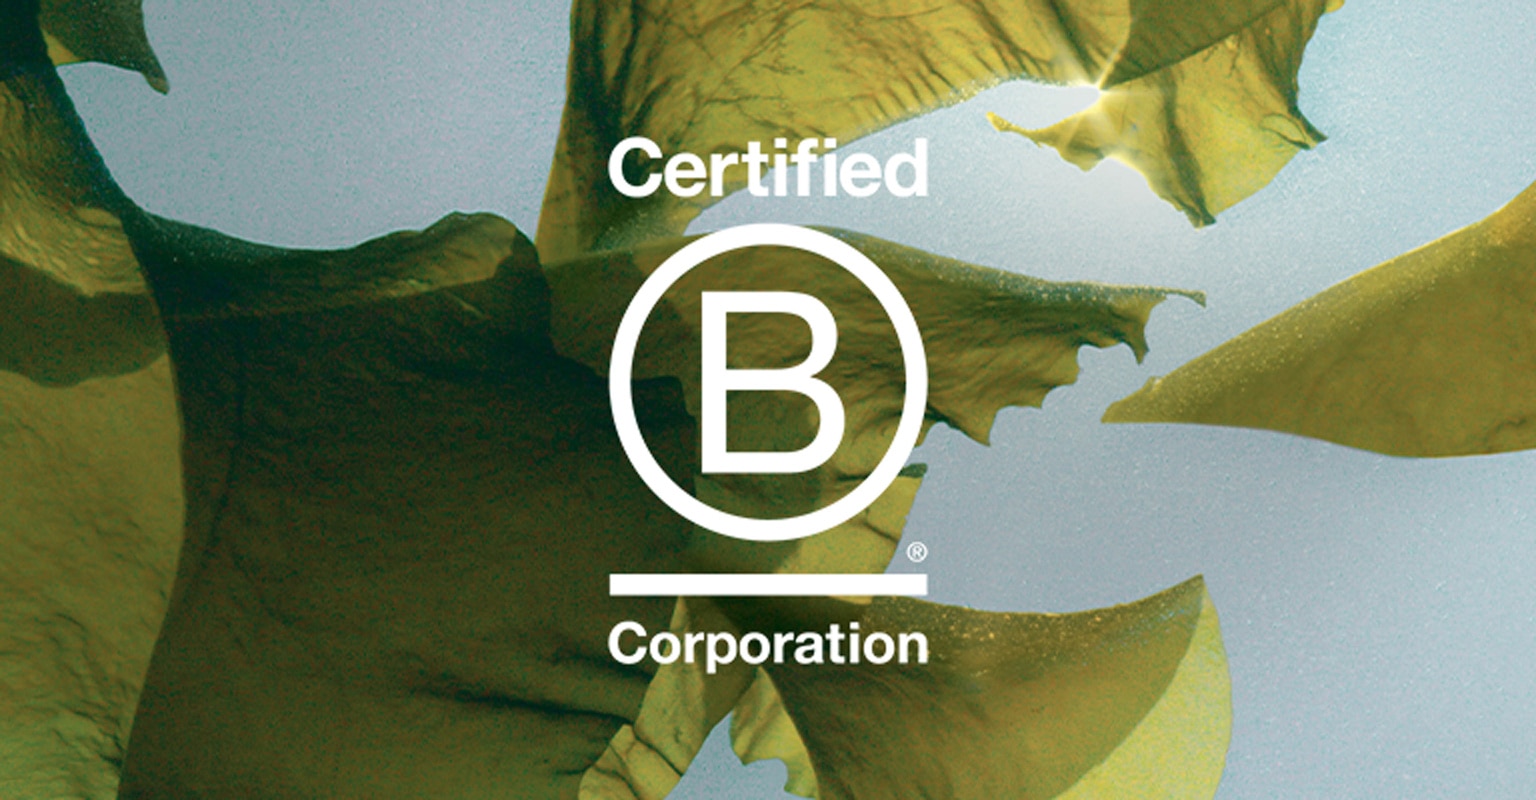 Aveda est certifiée B Corporation